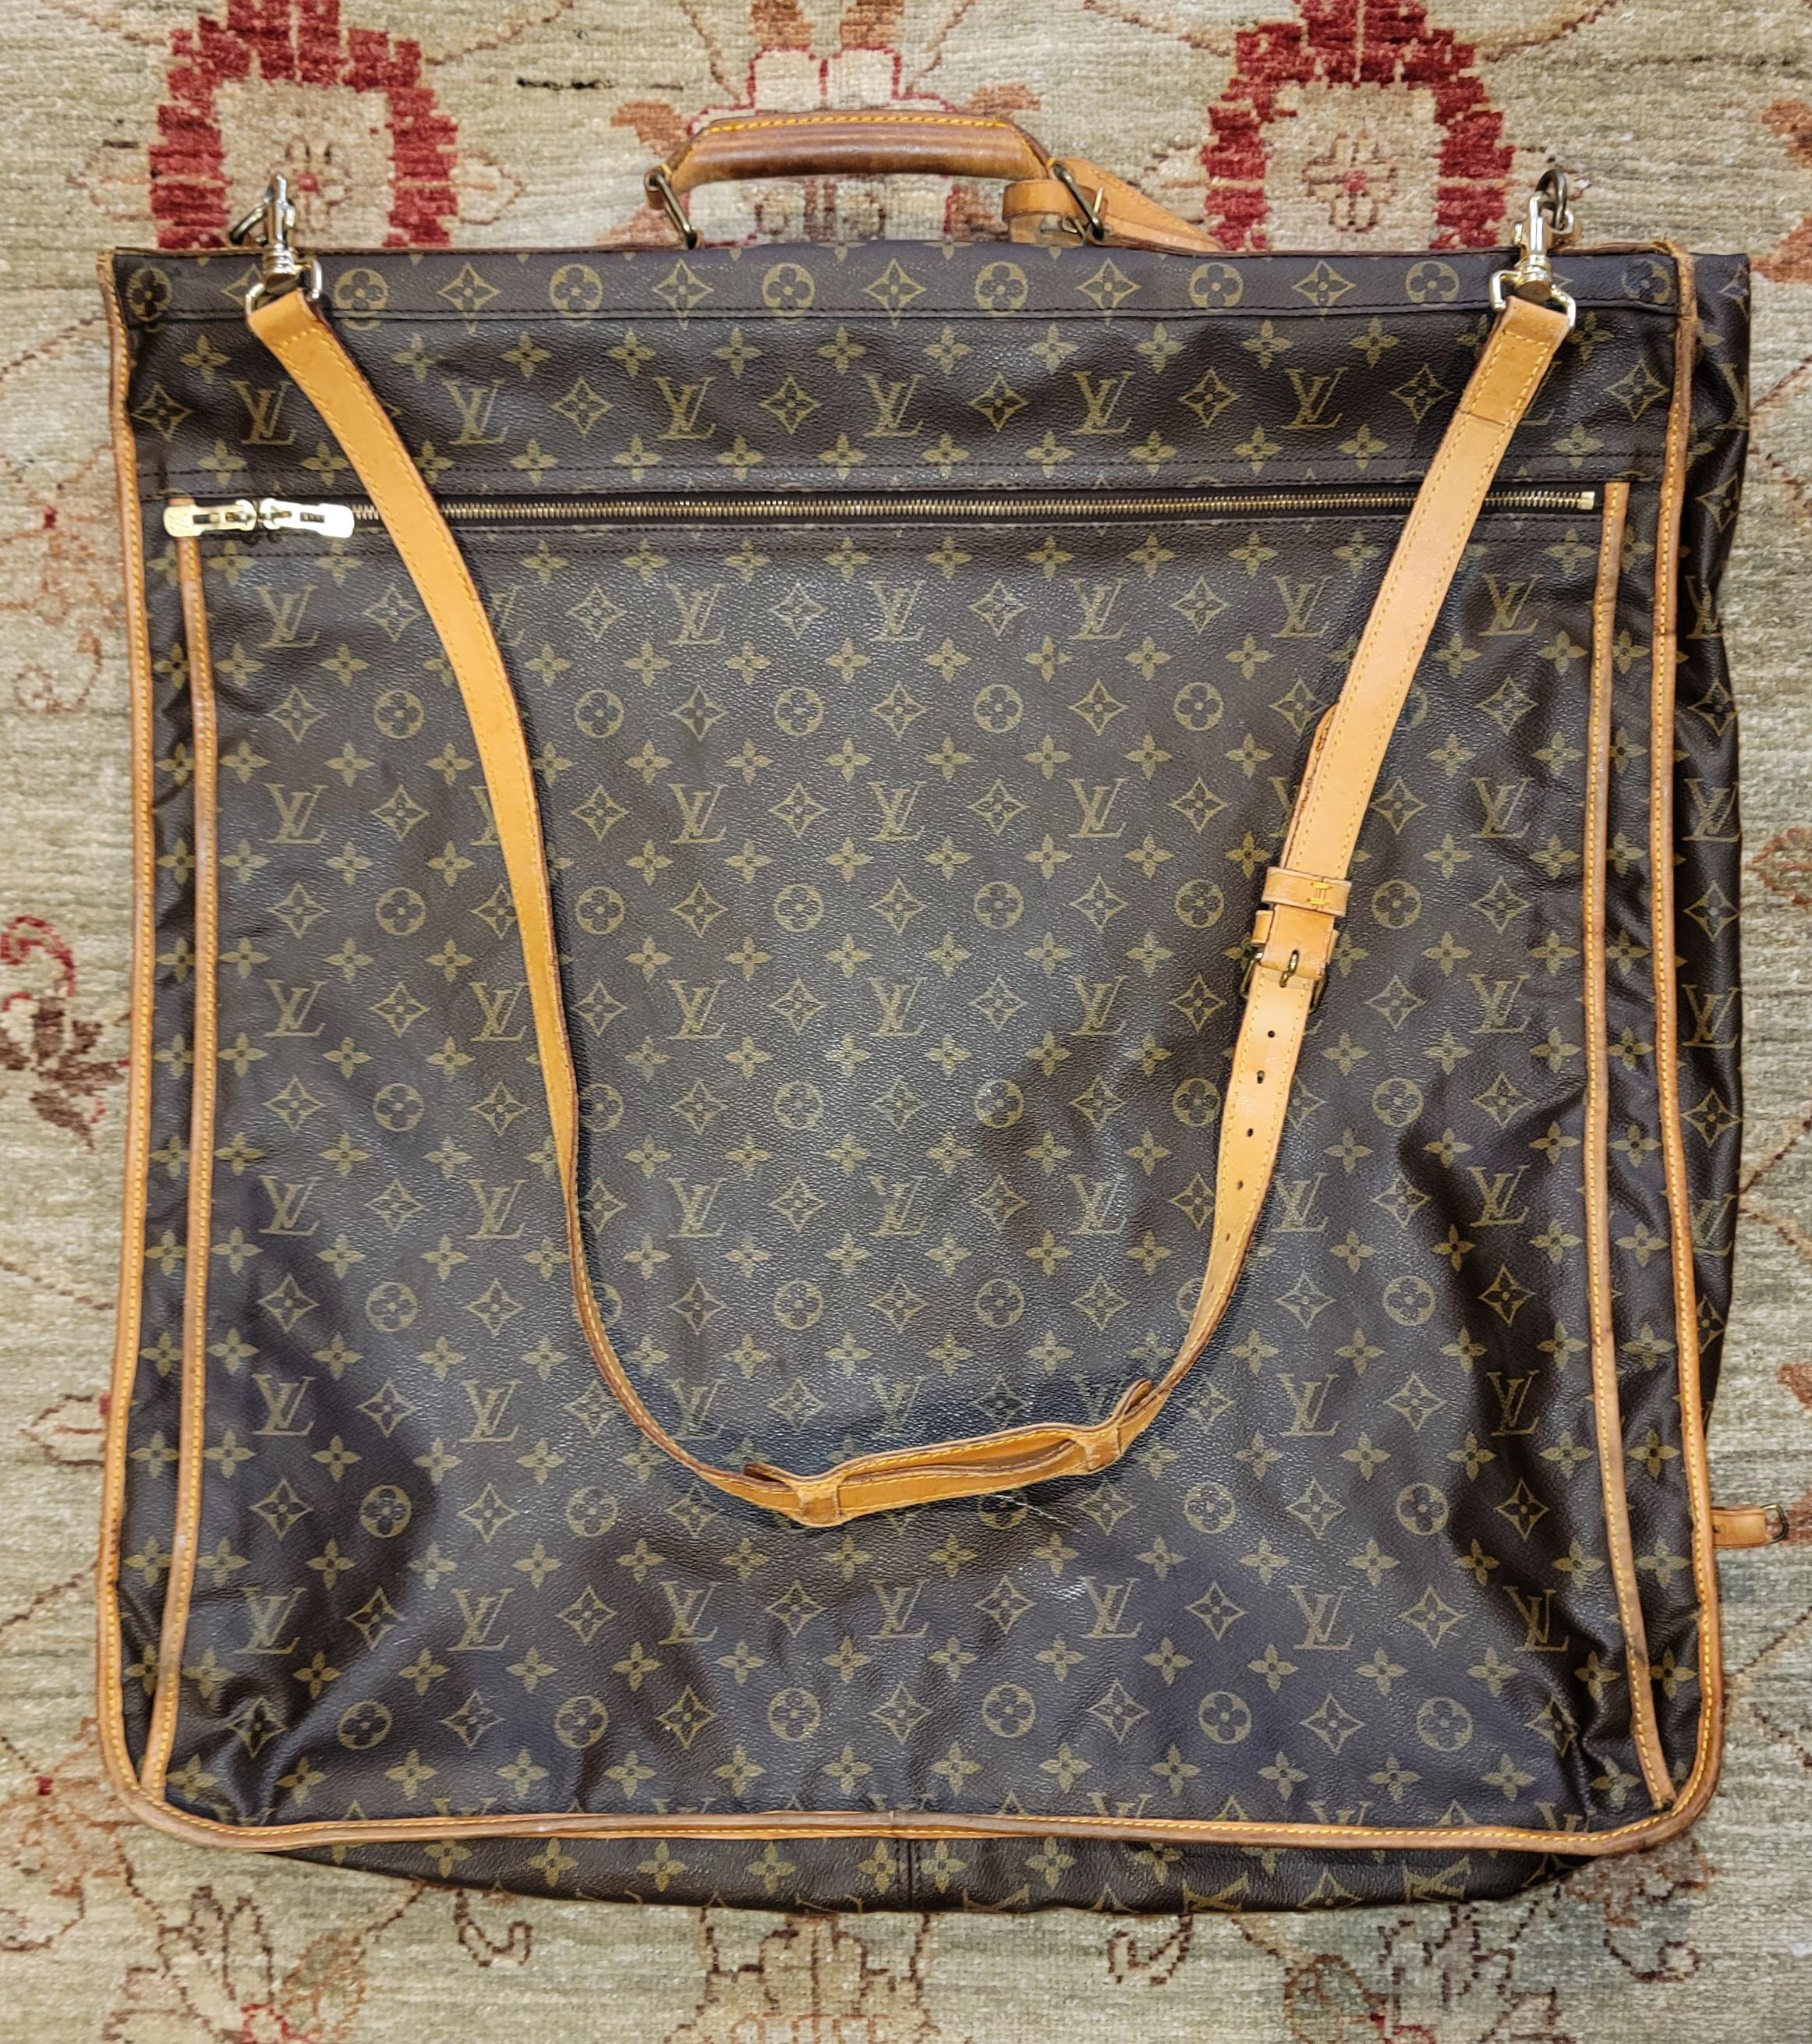 Louis Vuitton Monogram Garment Luggage Carrying Bag mit 2 Kleiderbügeln Es gibt einen Haken an der Unterseite der Tasche, wenn geöffnet kann in einem Schrank hängen. LV-Lederriemen und Schnallen an der Außen- und Innenseite der Tasche. Dies ist ein